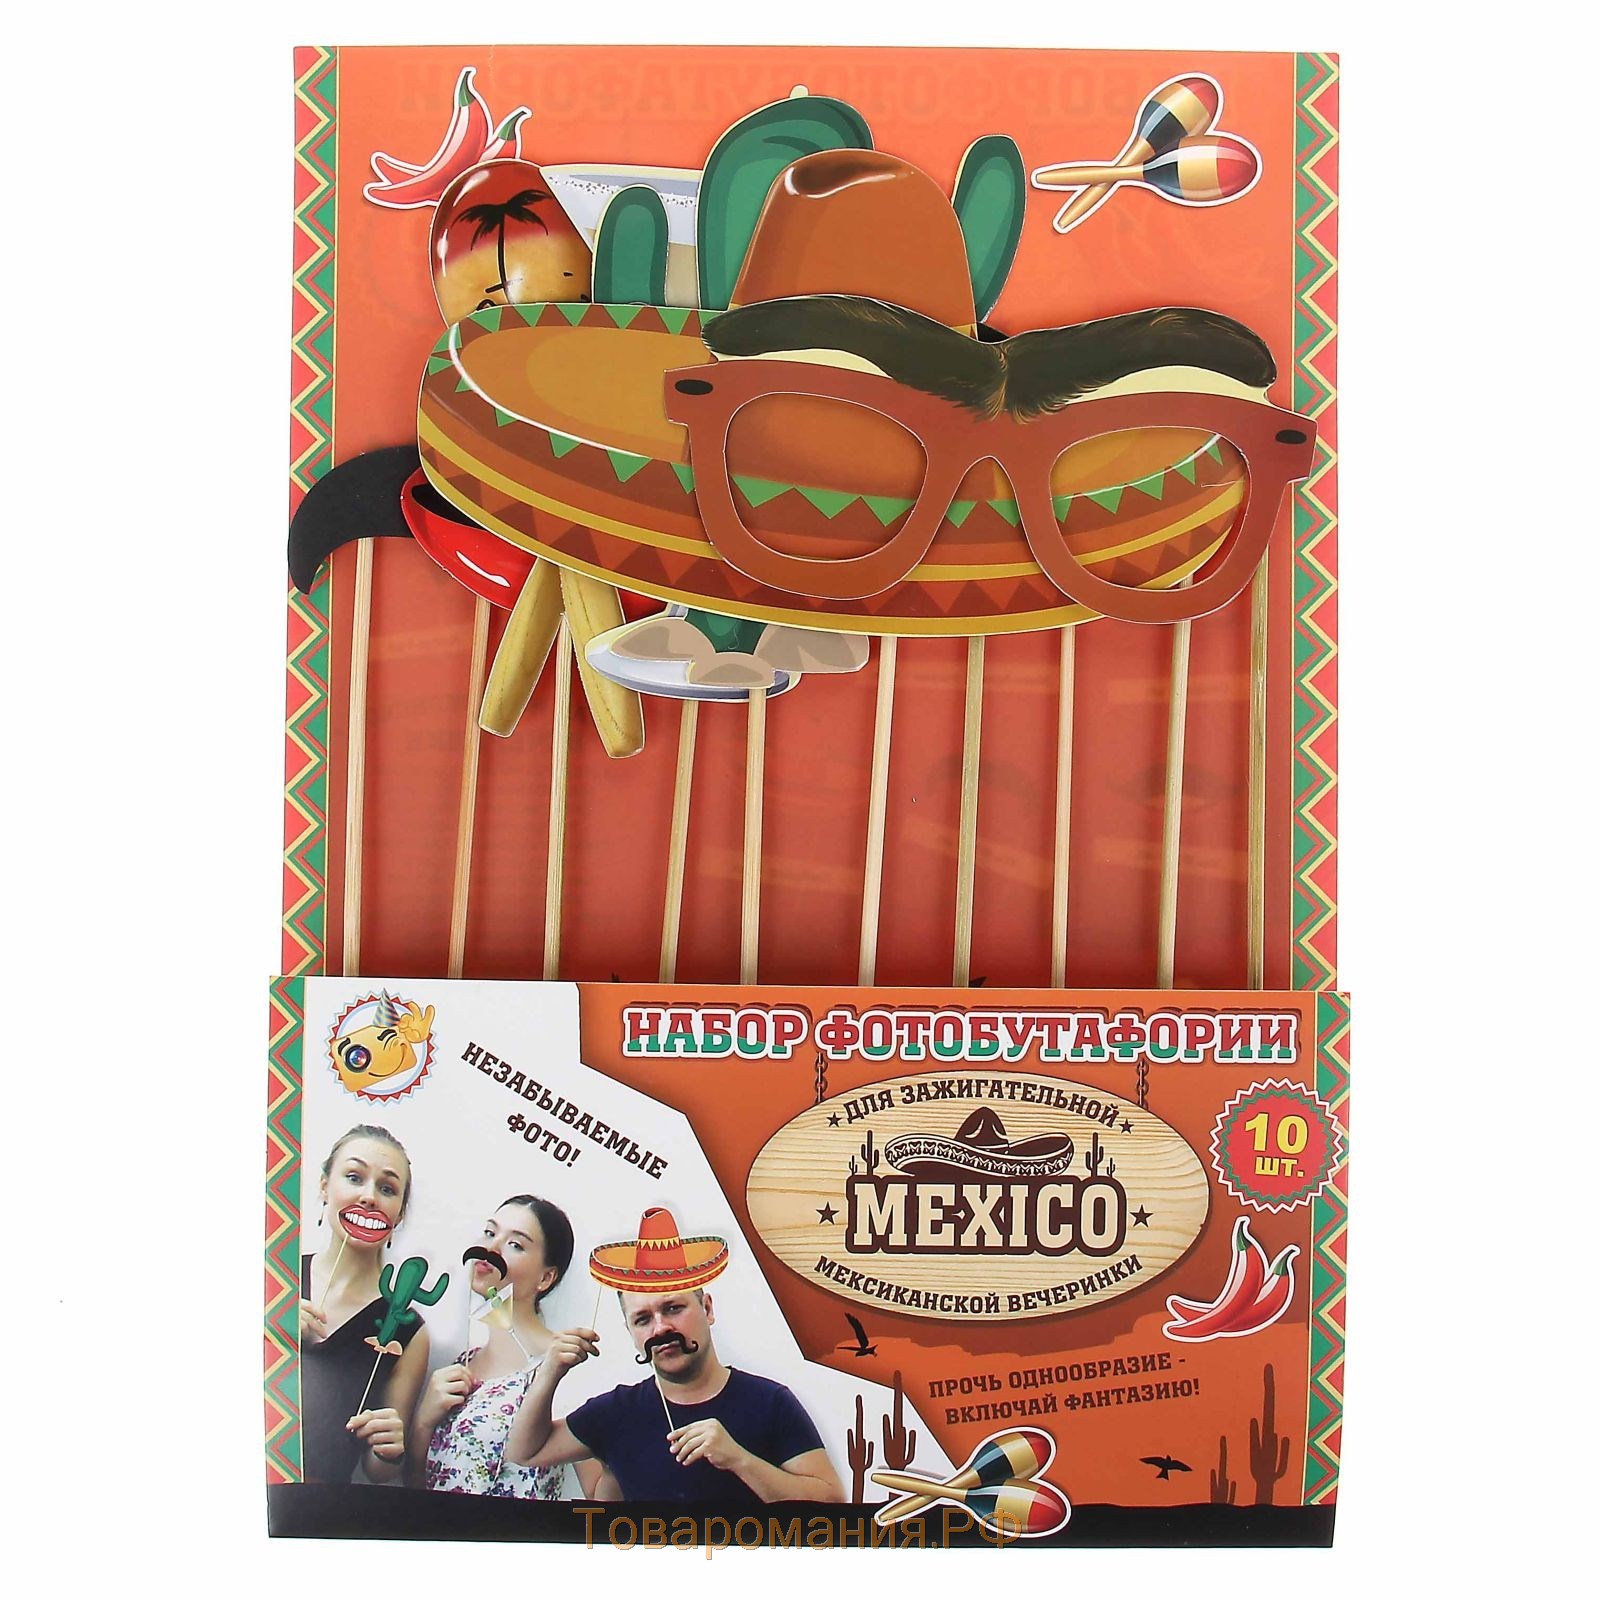 Набор фотобутафории "Мексиканская вечеринка", 10 предметов